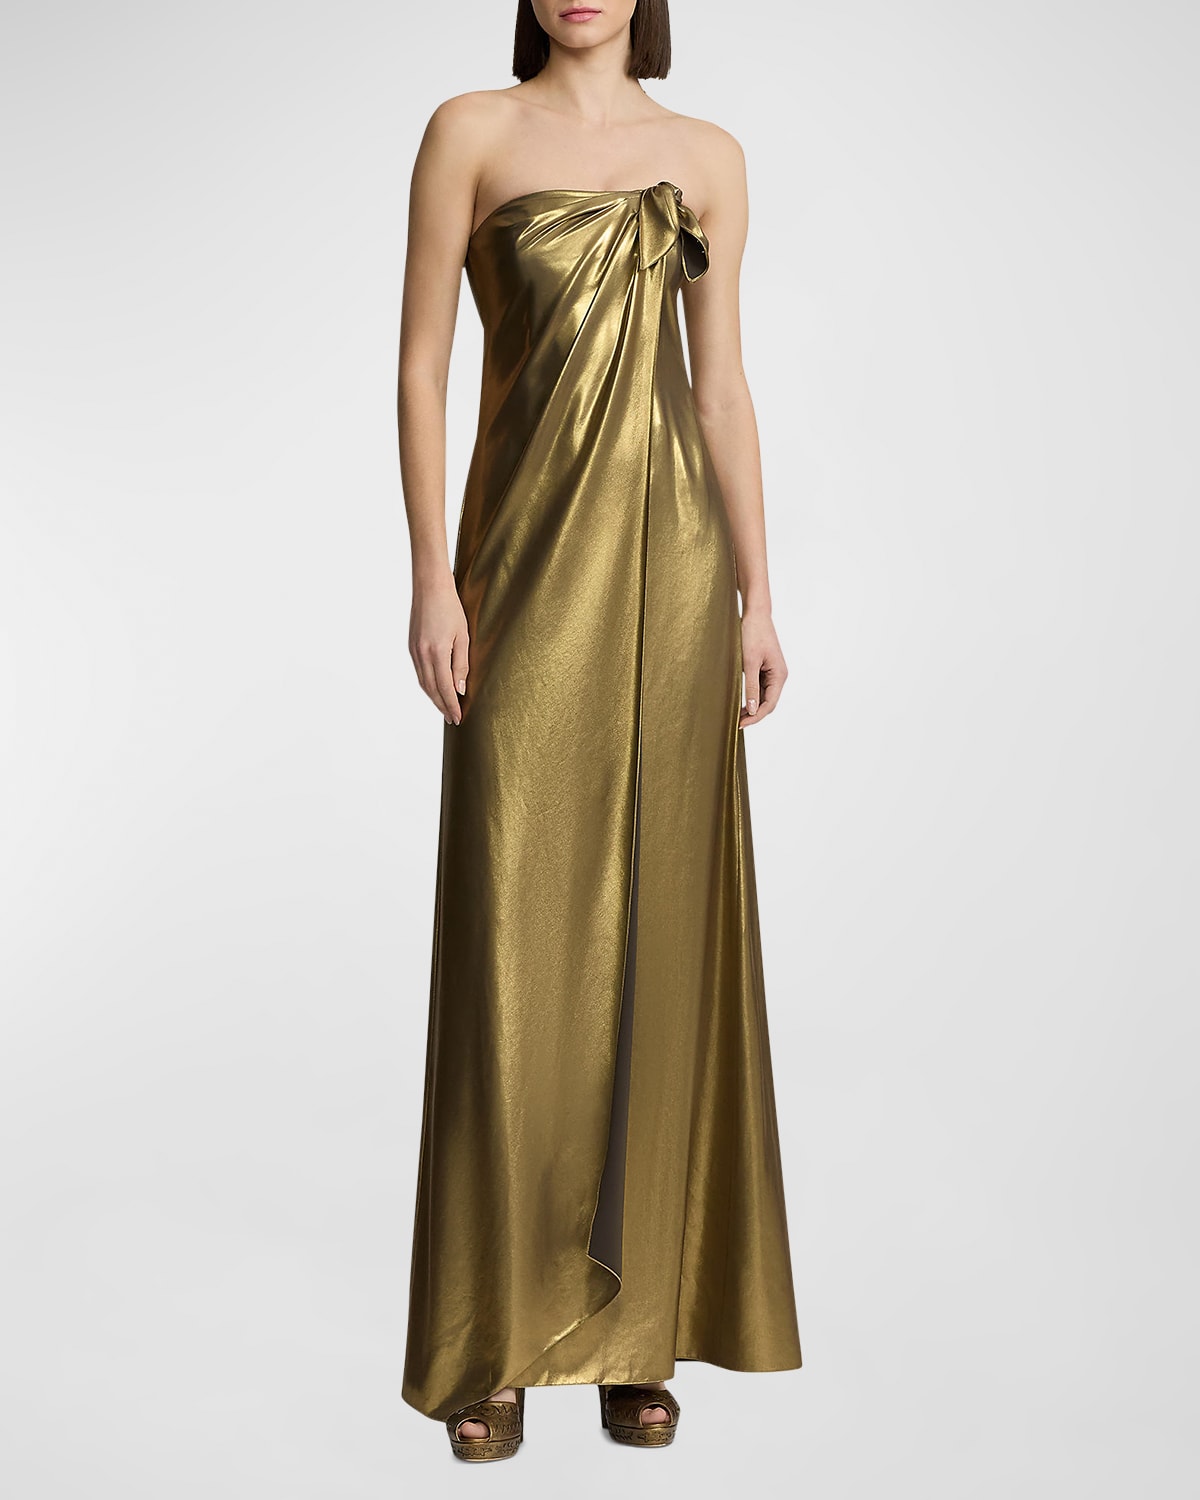 Brigitta Strapless Metallic Gown with Bow Detail